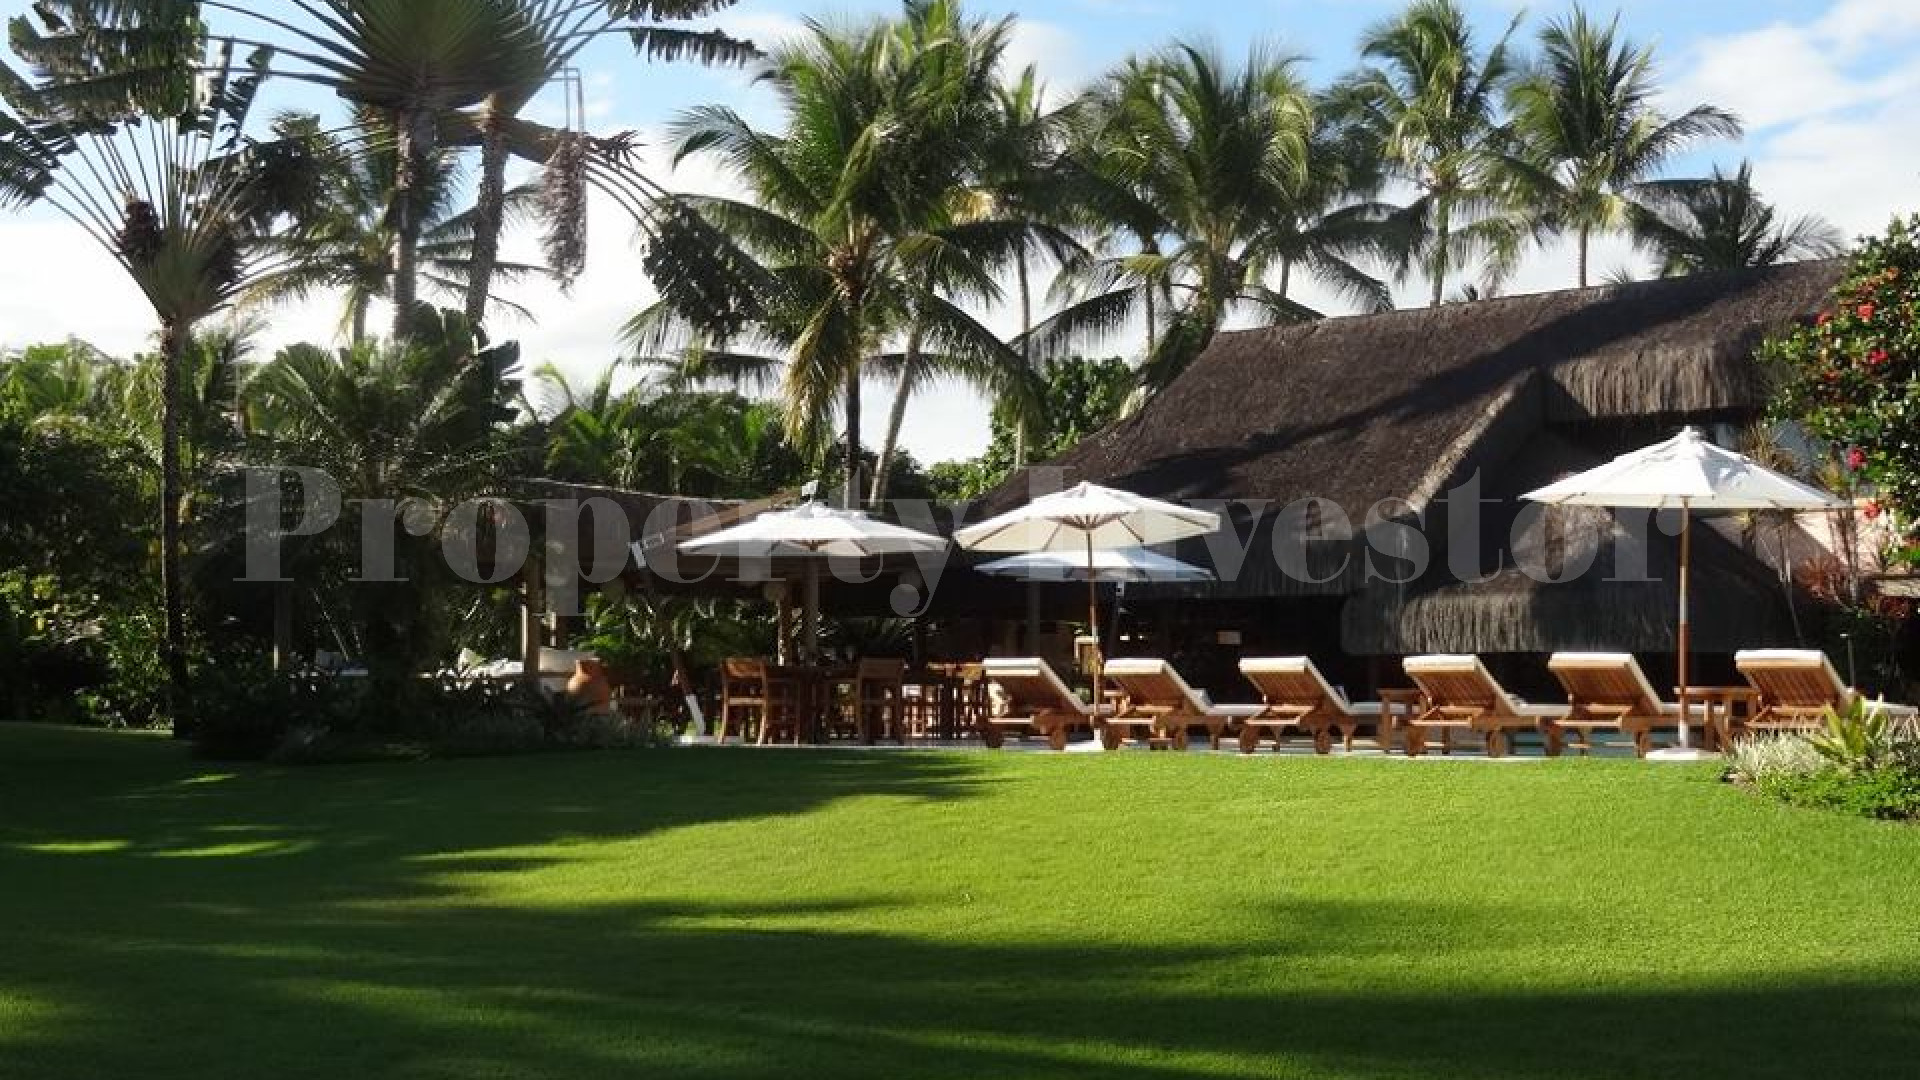 Elegant 10 Bungalow & Villa Boutique Beach Resort for Sale in Trancoso, Brazil